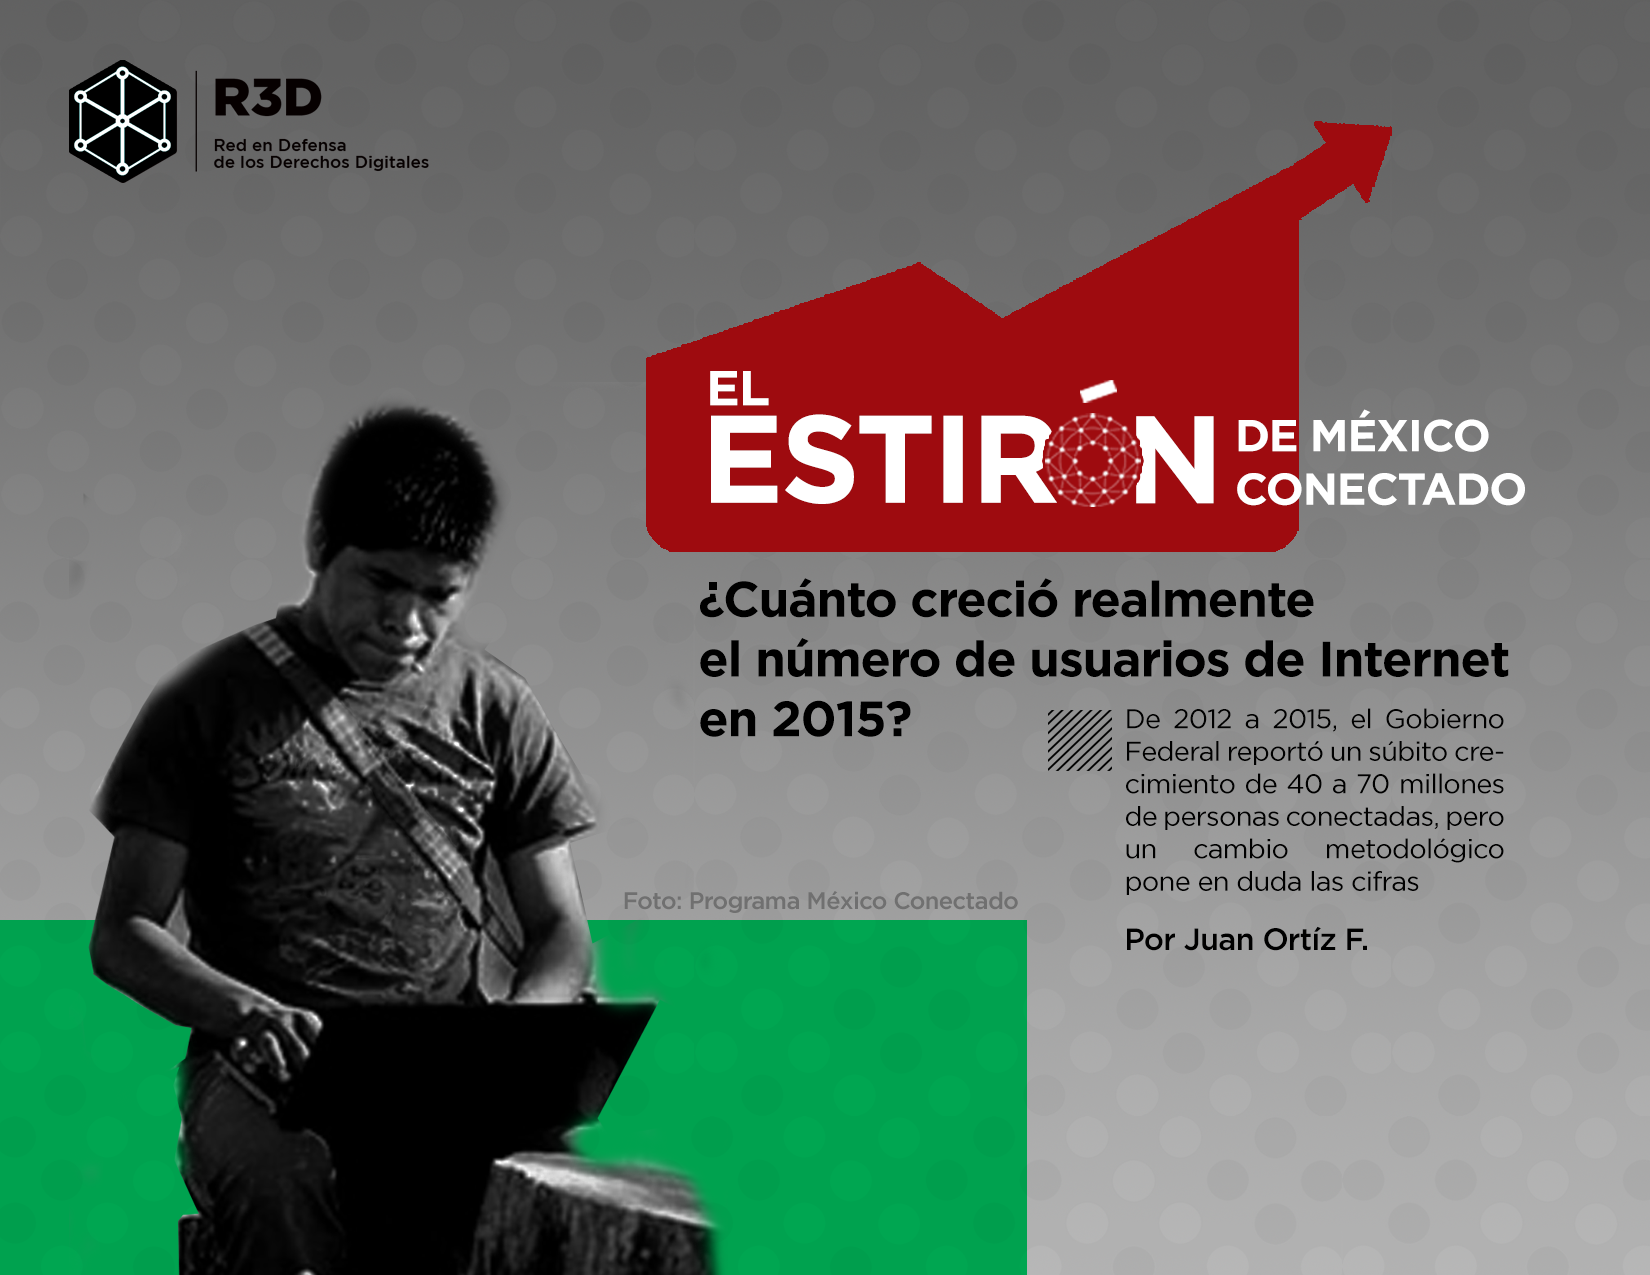 El estirón de México Conectado: ¿cuánto creció realmente el número de usuarios de Internet en 2015?